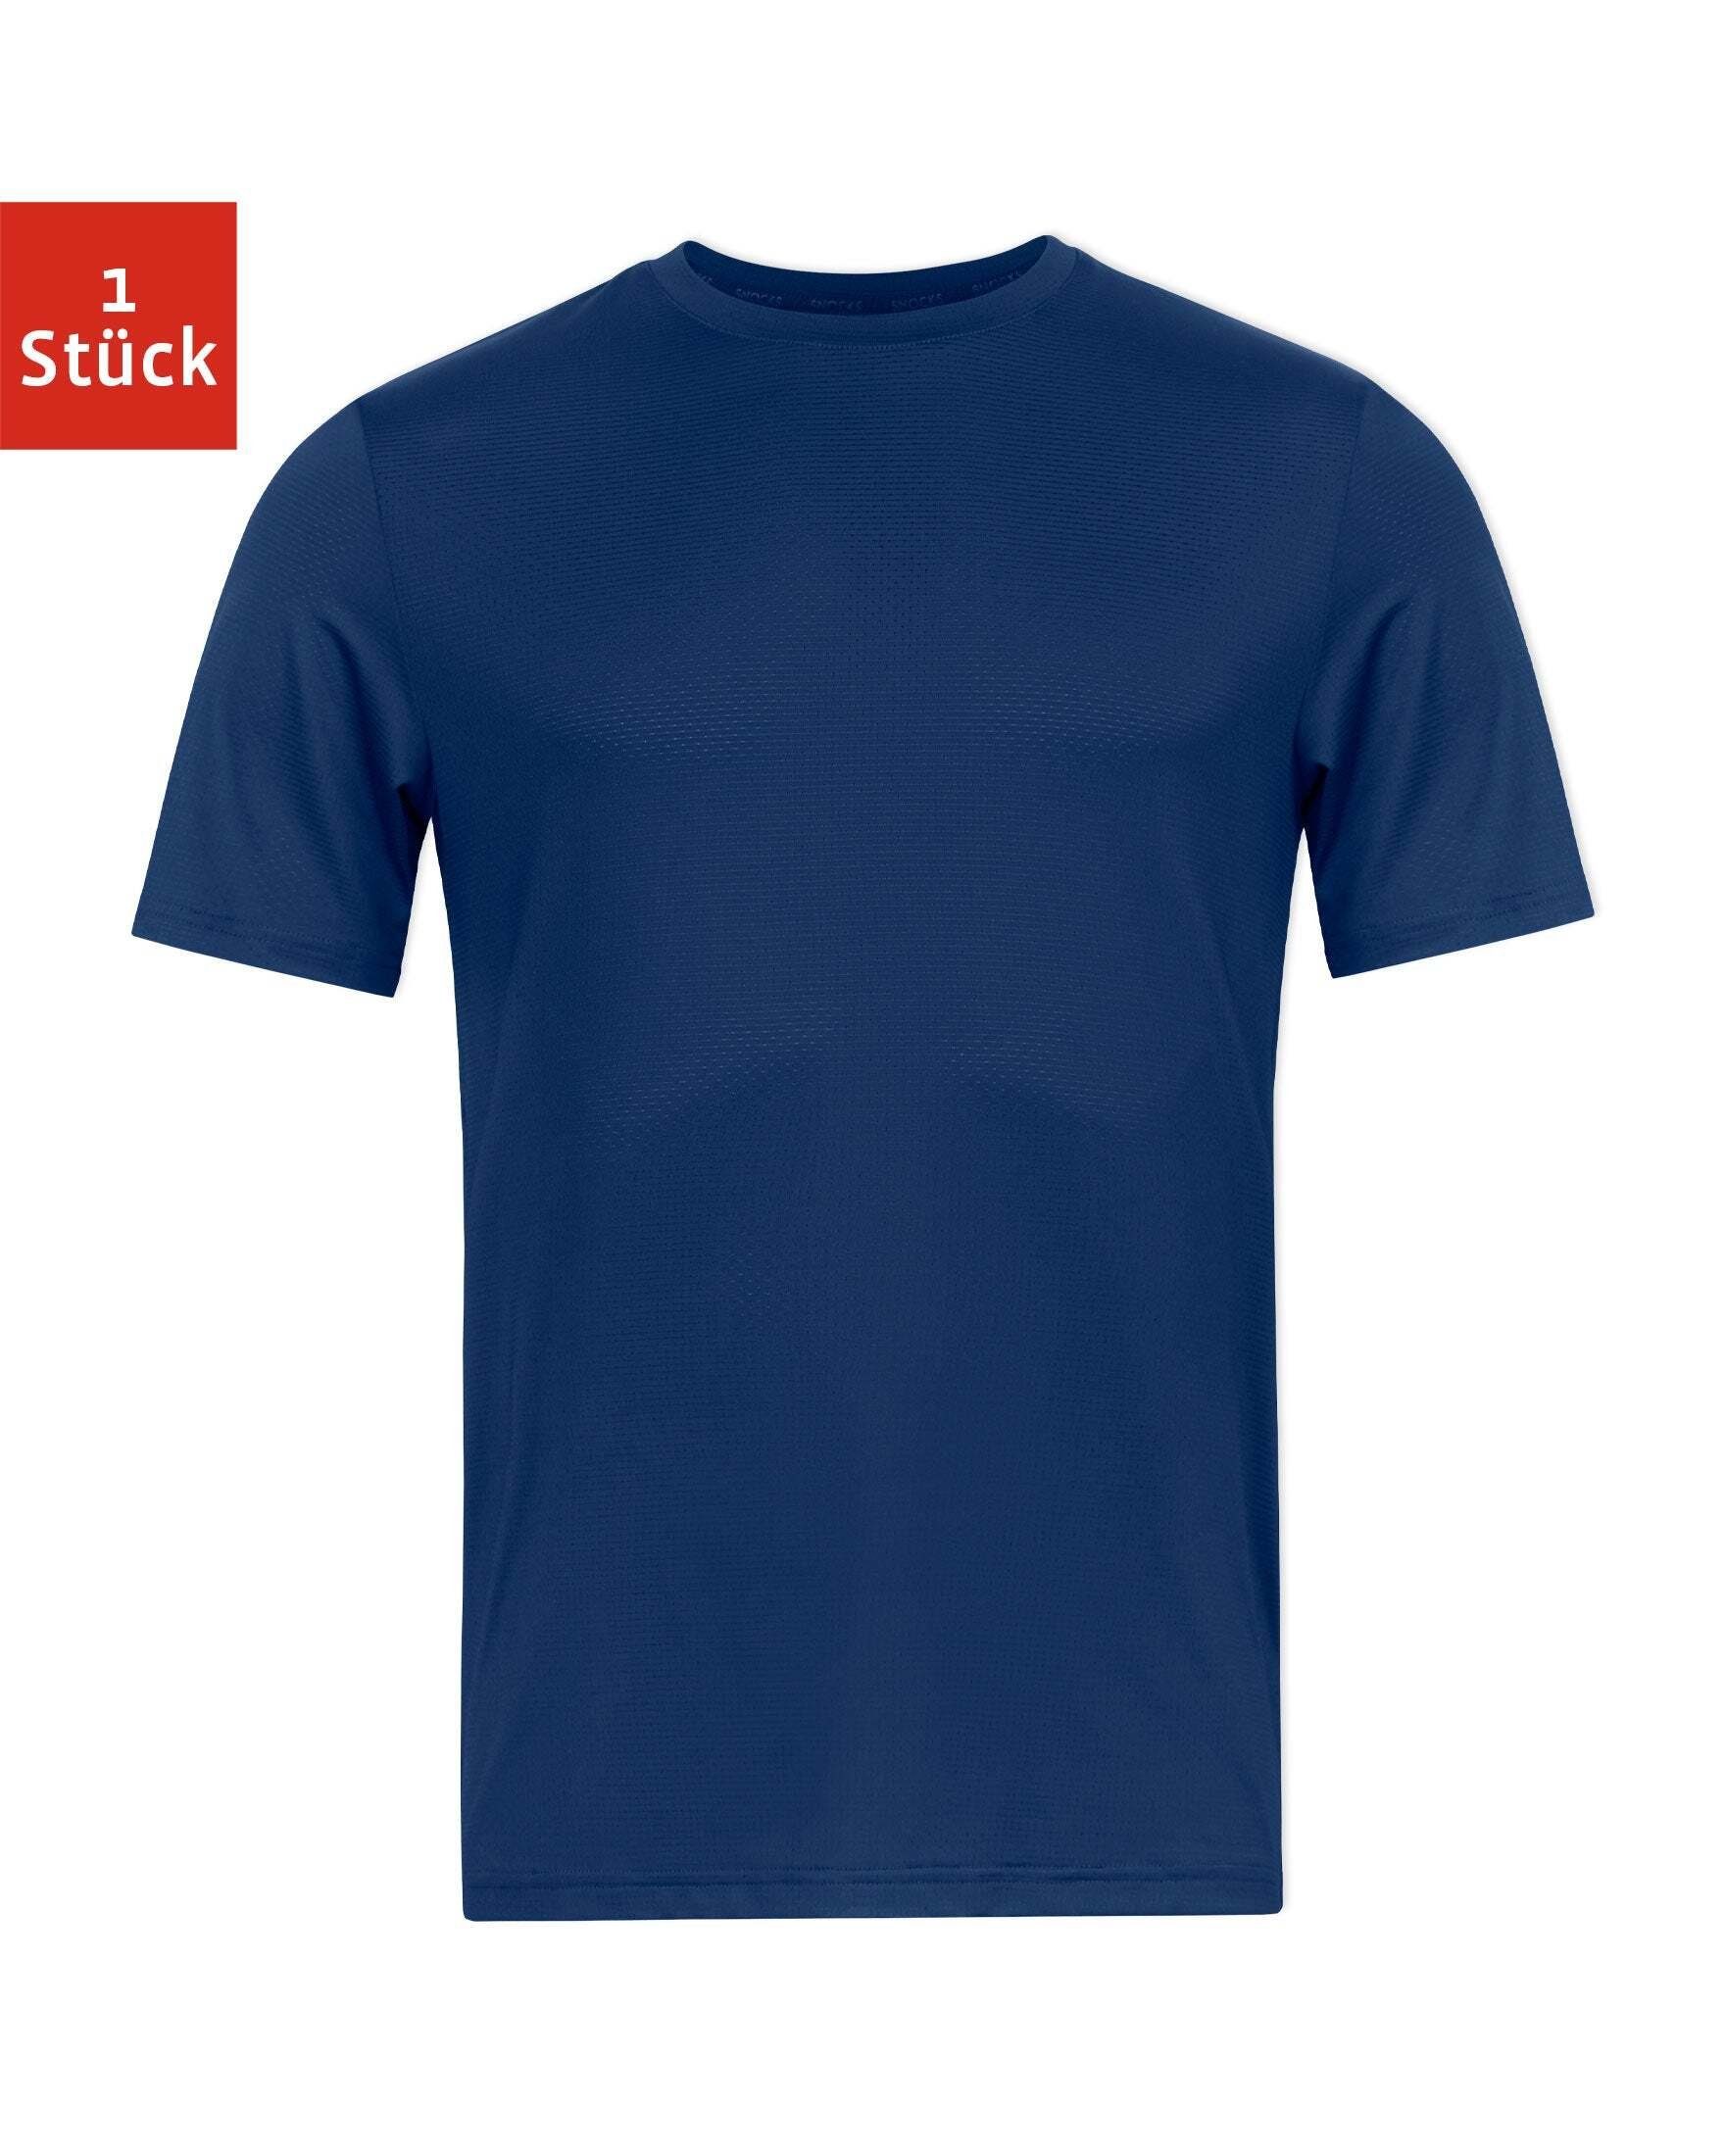 Blaue Damen Funktionsshirts online kaufen OTTO 